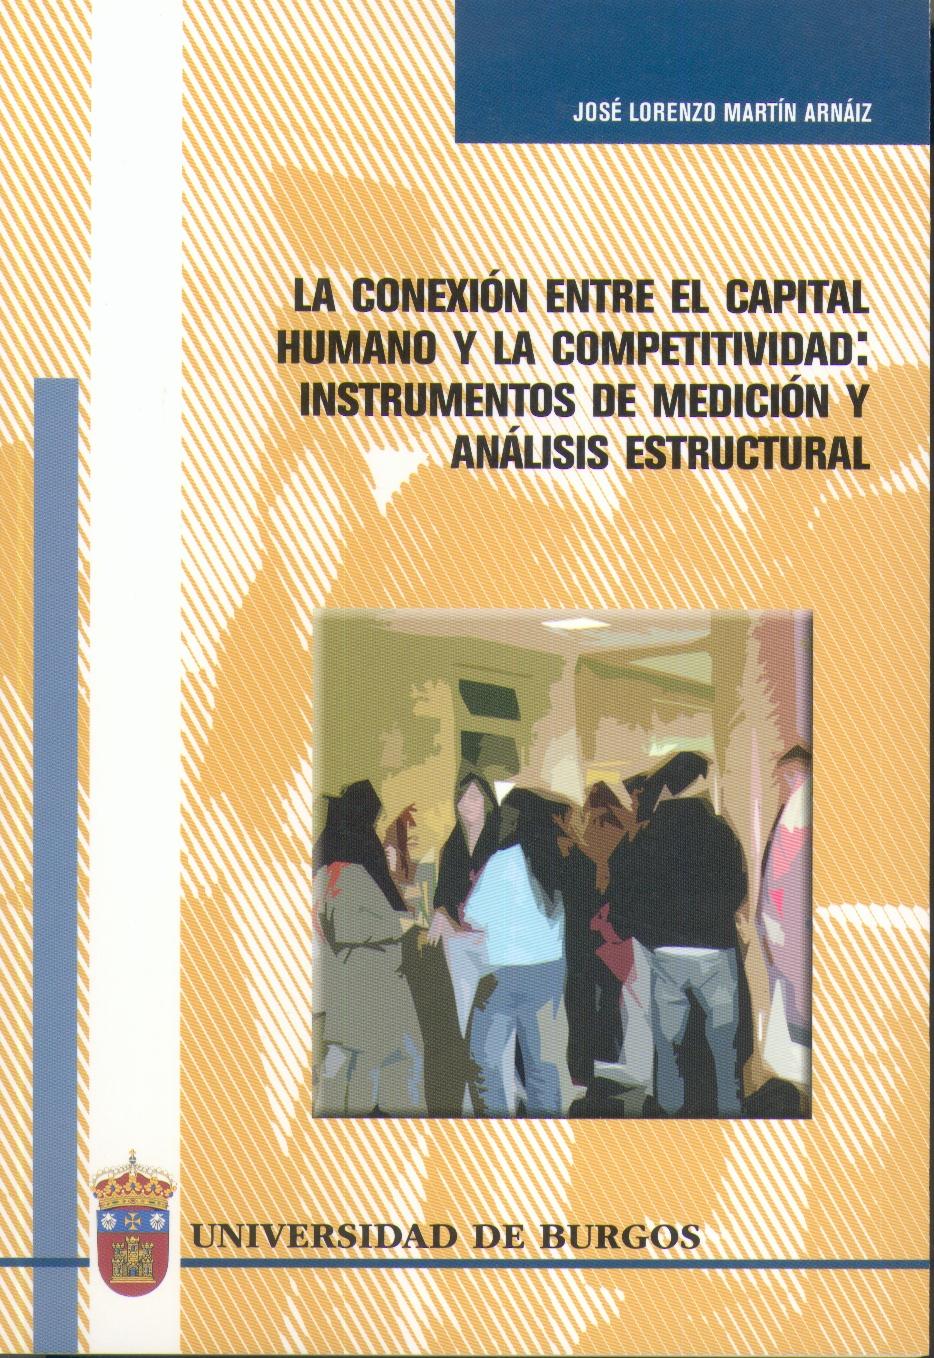 La Conexion Entre el Capital Humano y la Competitividad "Instrumentos de Medicion y Analisis Estructural". Instrumentos de Medicion y Analisis Estructural